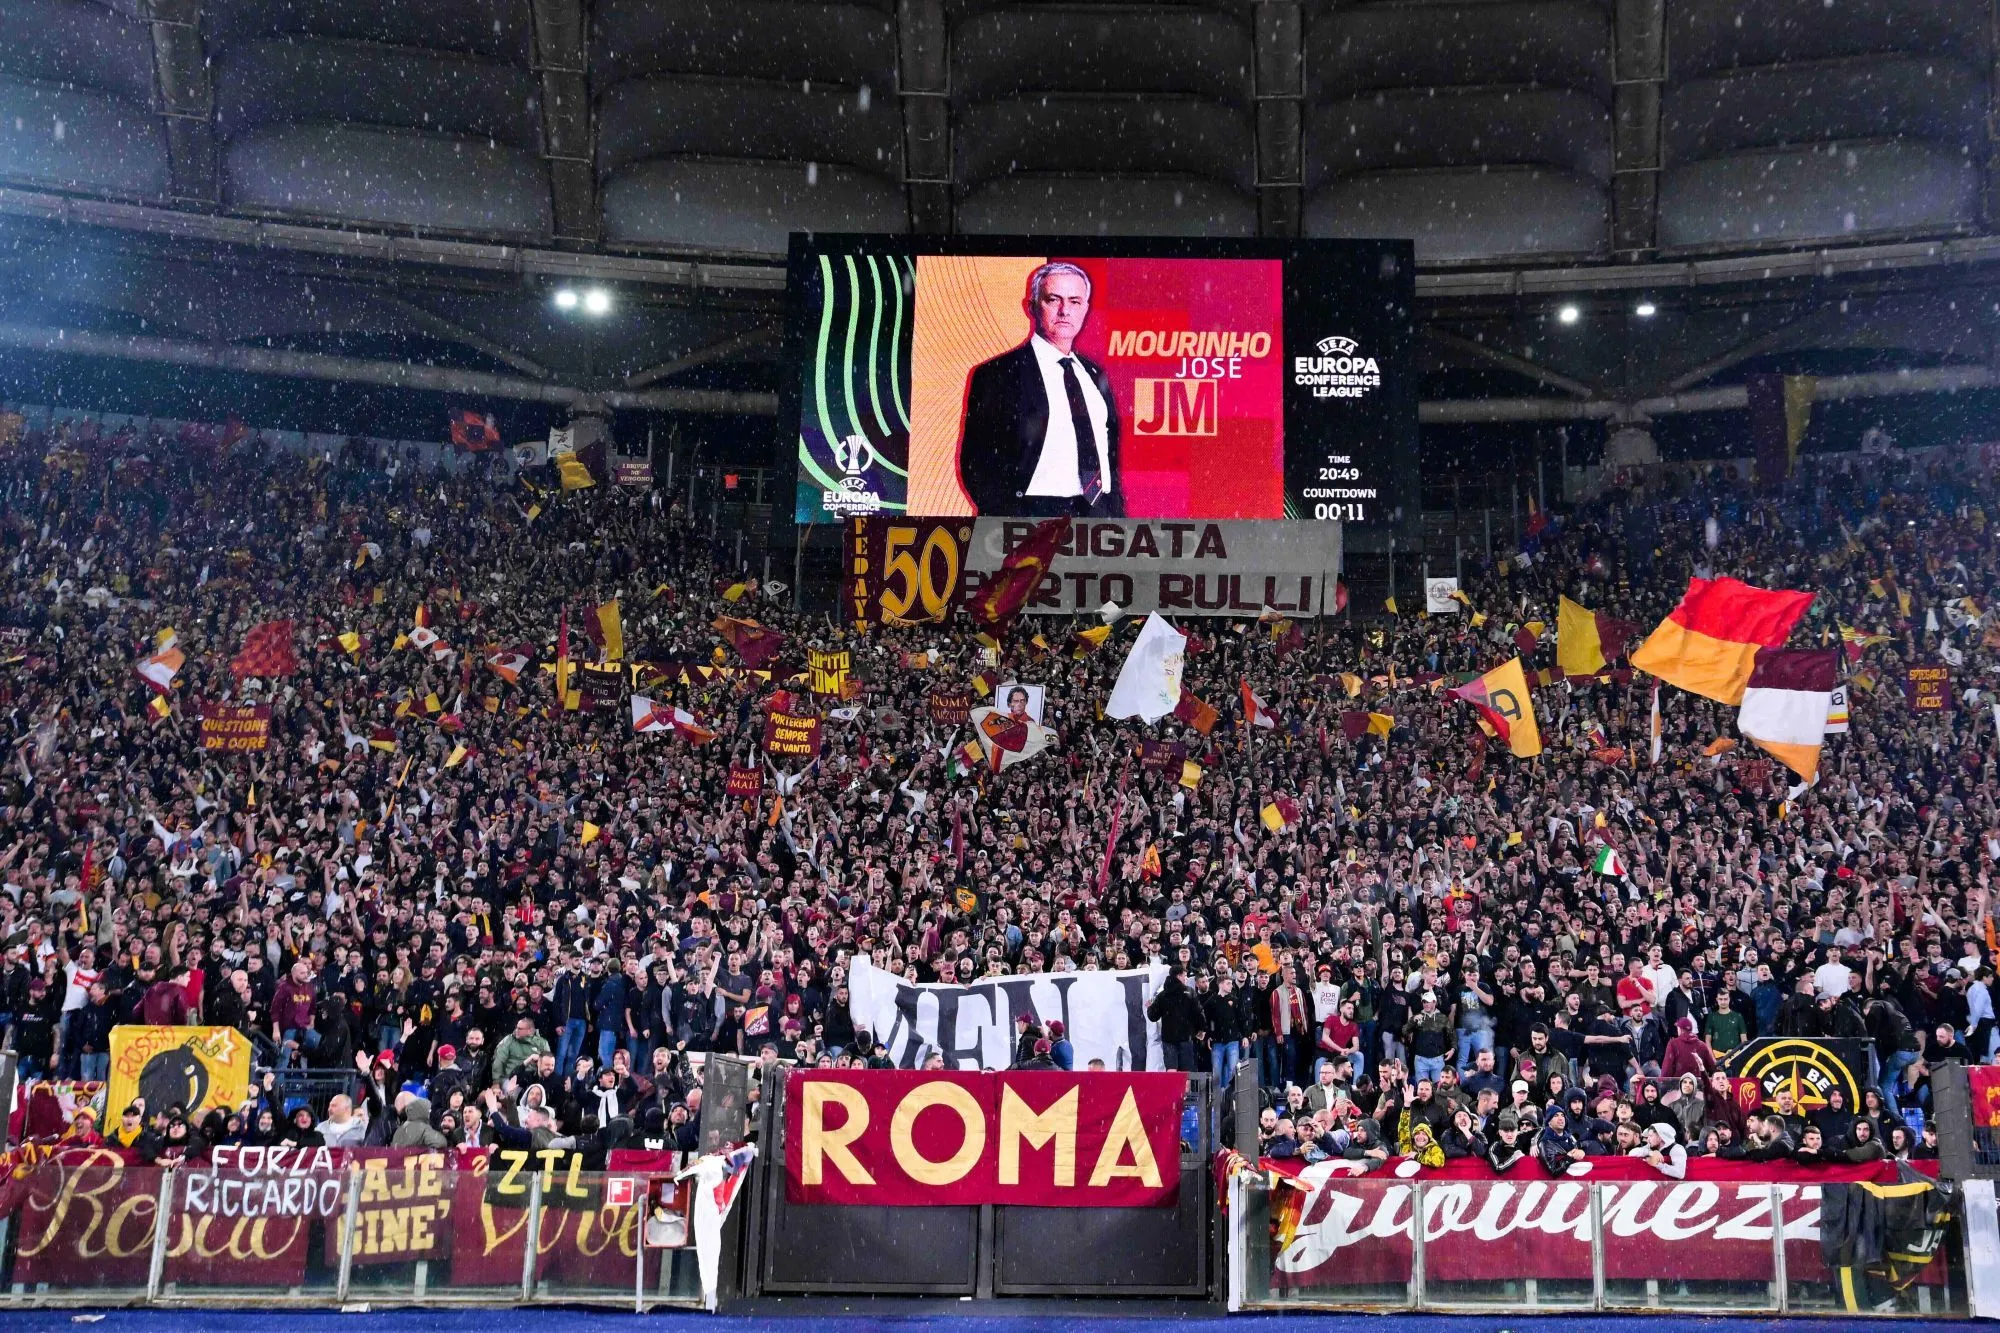 Rivaux avec Feyenoord, les fans de la Roma donnent des consignes pour la finale de C4